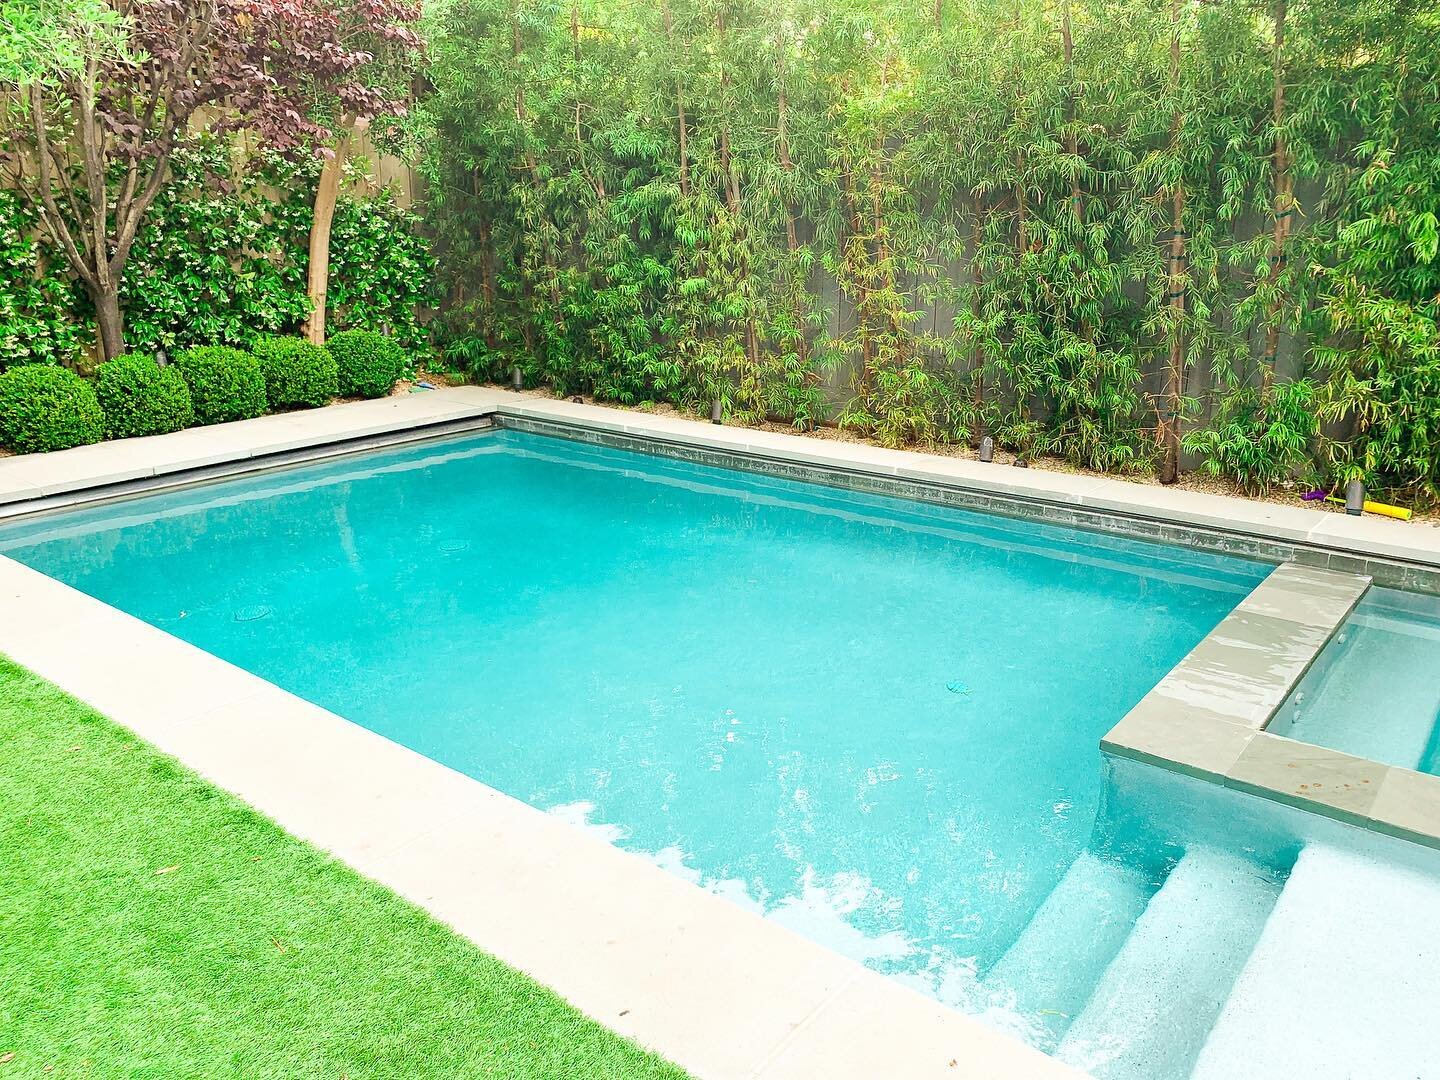 Make your beautiful pool family safe. Contact me! 

#pooldesign #poolside #homedesign #homeartchitecture #poolcontractor #luxurypools #luxurypooldesign #backyardoasis #backyardlandscape #backyardsofig #backyarddesign #pooldesigner #pooldesigns #luxur